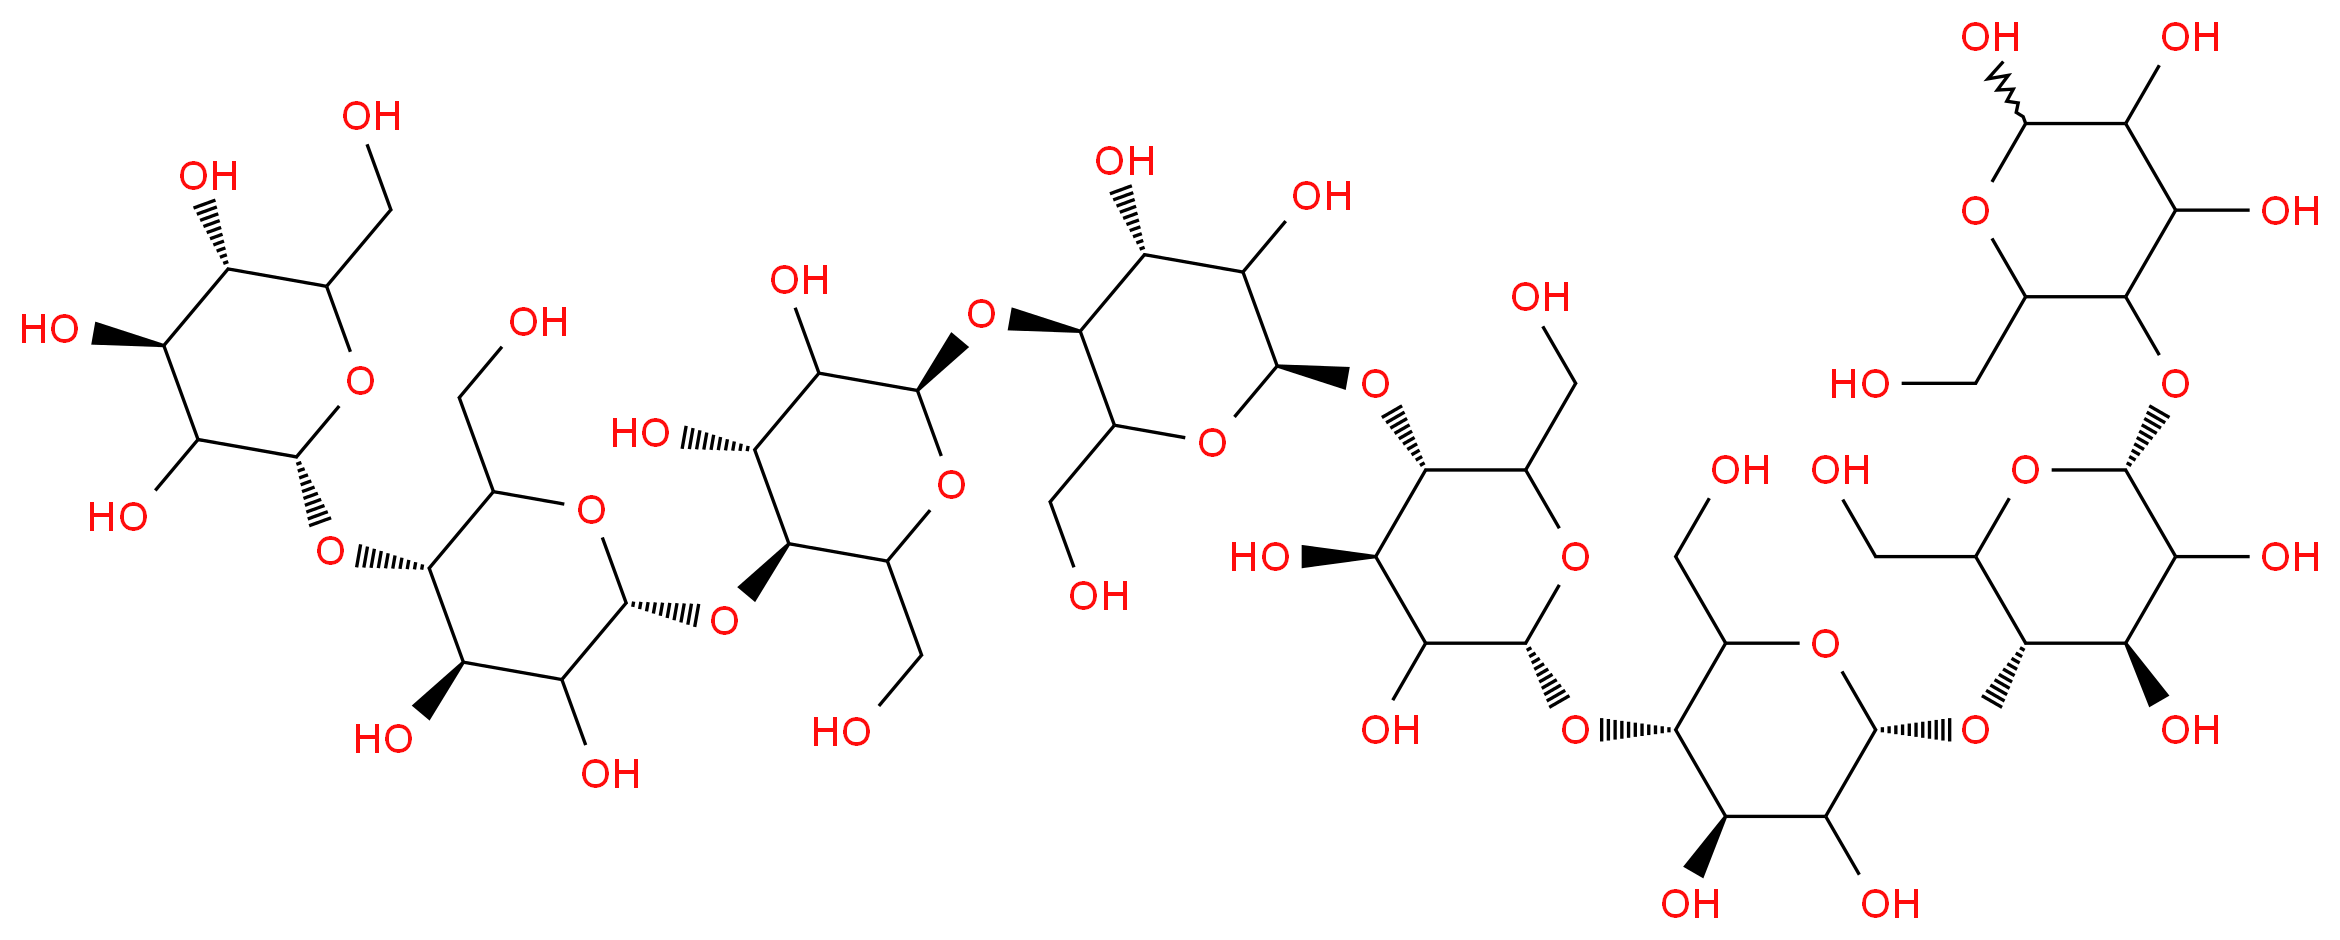 (2R,4S,5S)-2-{[(3S,4R,6R)-6-{[(3S,4R,6R)-6-{[(3S,4R,6R)-6-{[(3S,4R,6R)-6-{[(3S,4R,6R)-6-{[(3S,4R,6R)-4,5-dihydroxy-2-(hydroxymethyl)-6-{[4,5,6-trihydroxy-2-(hydroxymethyl)oxan-3-yl]oxy}oxan-3-yl]oxy}-4,5-dihydroxy-2-(hydroxymethyl)oxan-3-yl]oxy}-4,5-dihydroxy-2-(hydroxymethyl)oxan-3-yl]oxy}-4,5-dihydroxy-2-(hydroxymethyl)oxan-3-yl]oxy}-4,5-dihydroxy-2-(hydroxymethyl)oxan-3-yl]oxy}-4,5-dihydroxy-2-(hydroxymethyl)oxan-3-yl]oxy}-6-(hydroxymethyl)oxane-3,4,5-triol_分子结构_CAS_6156-84-9